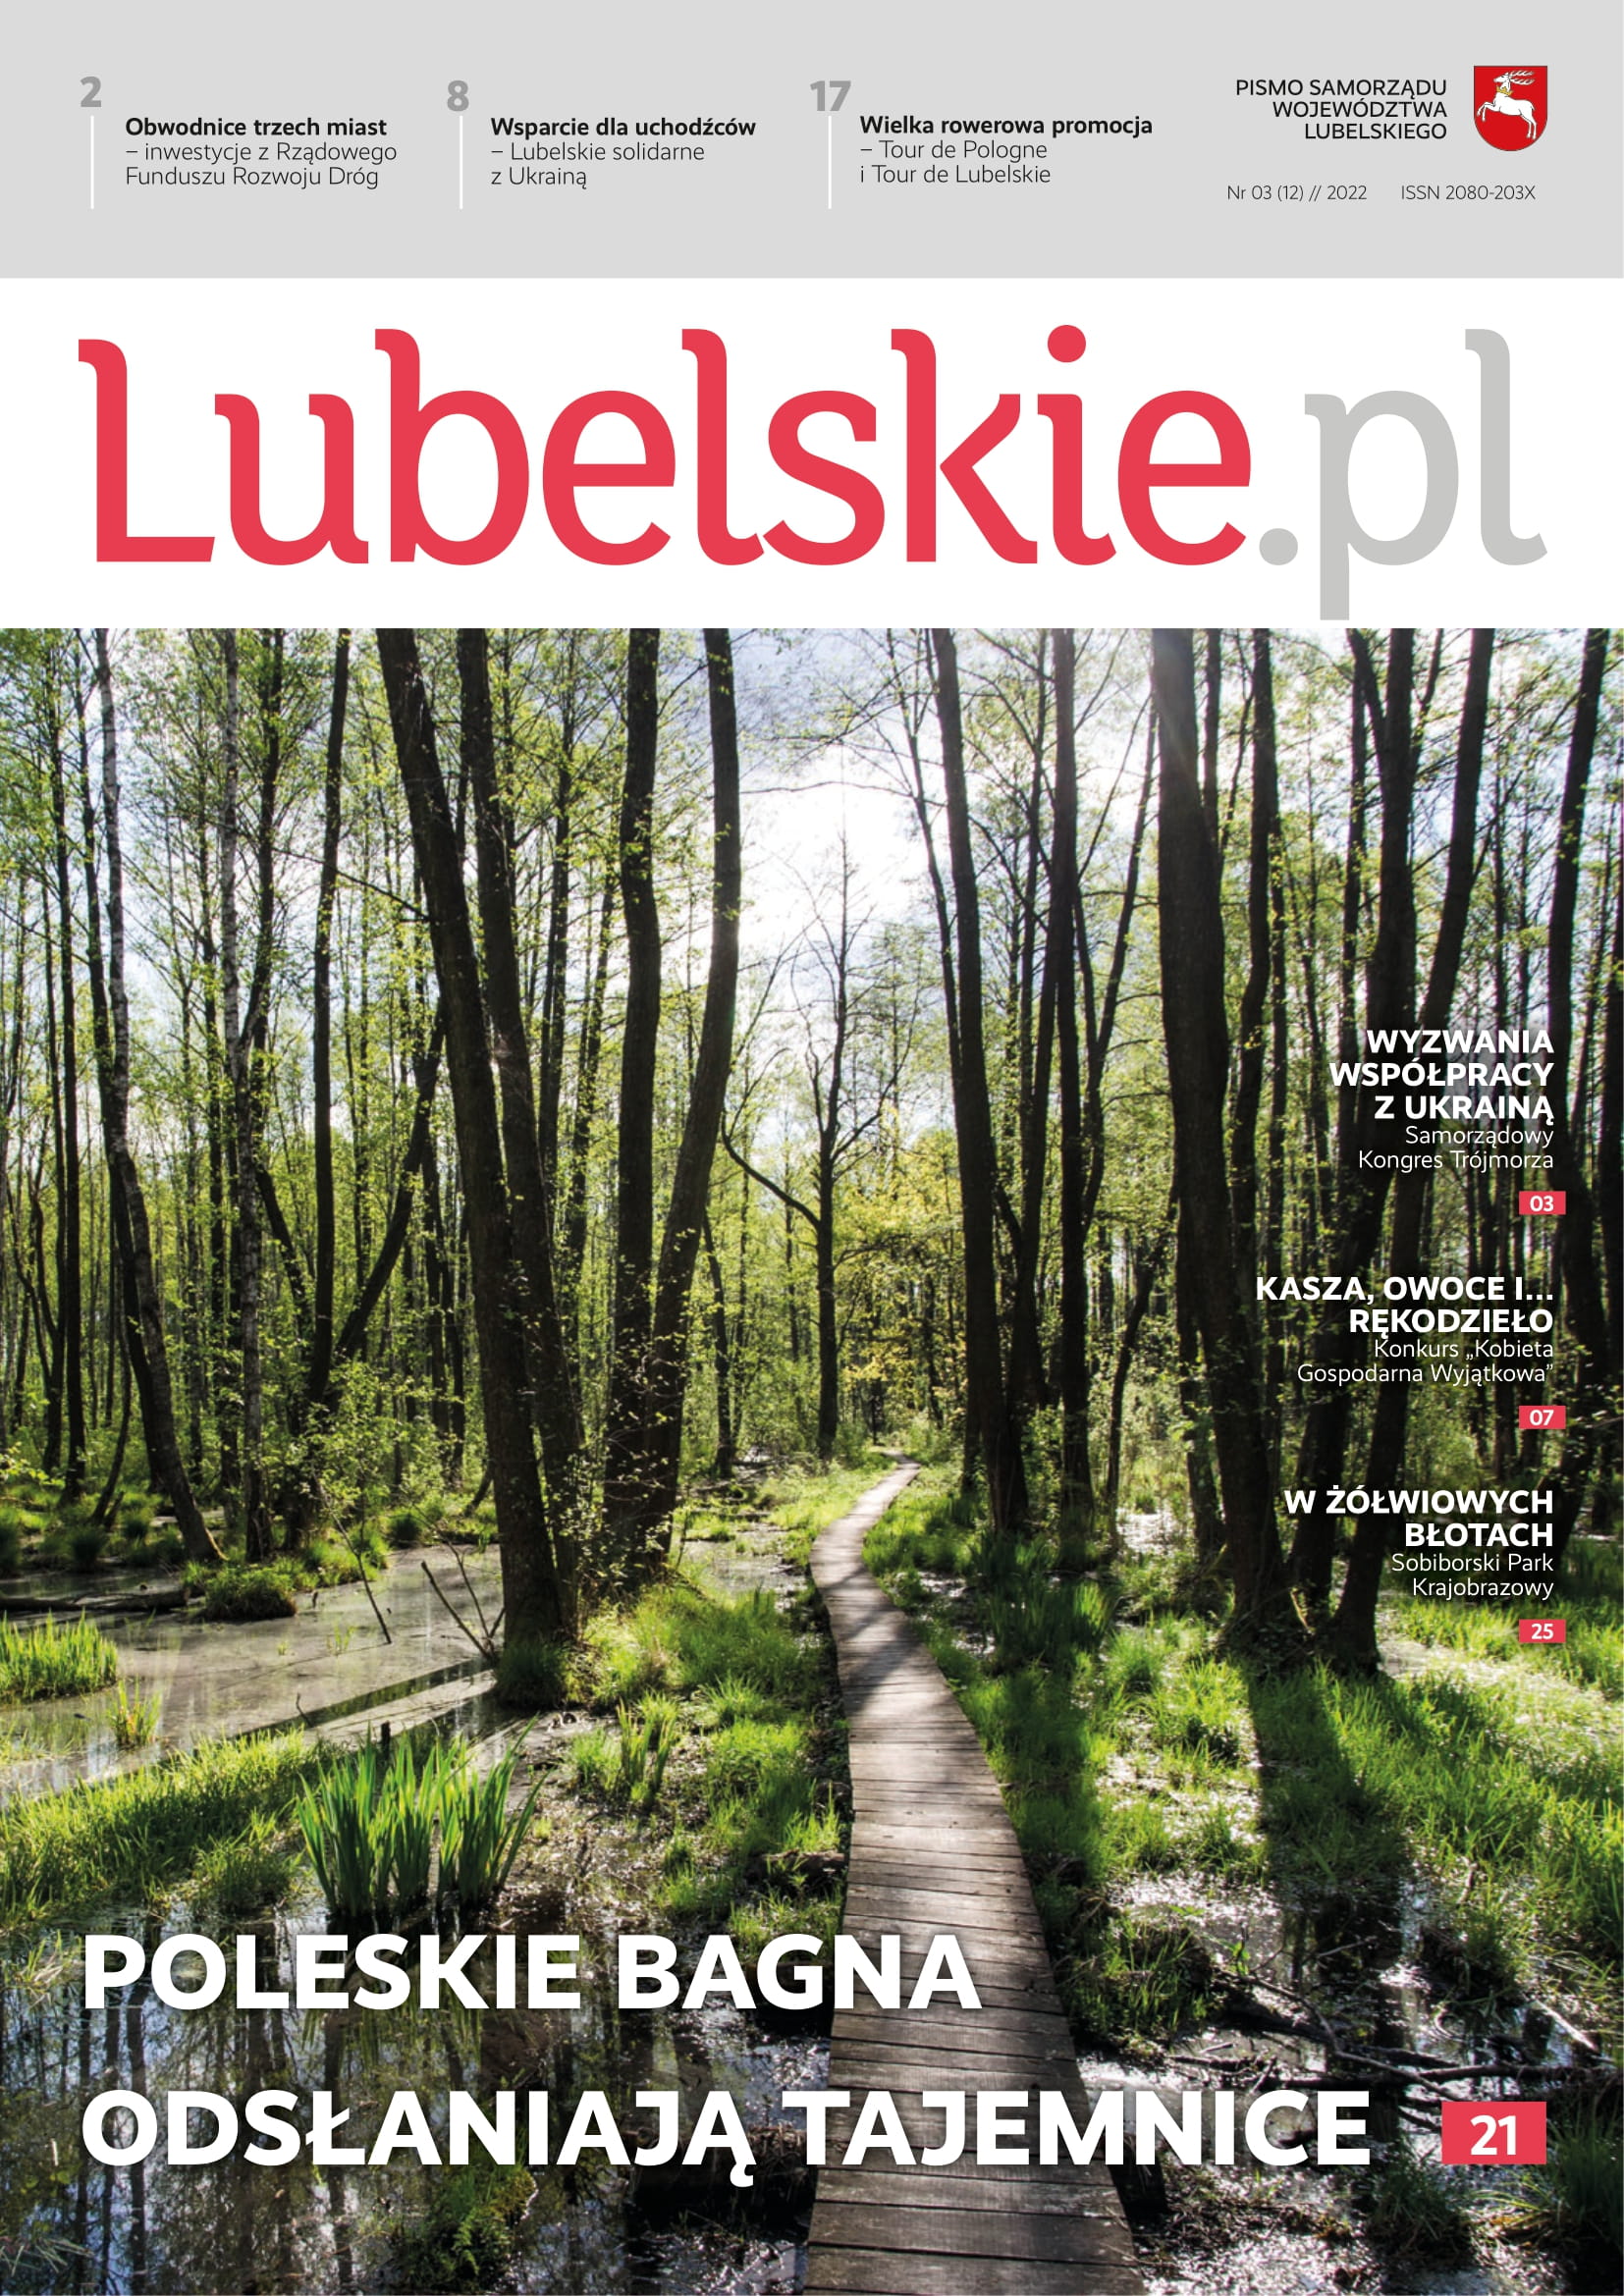 Okładka magazynu Lubelkie.pl przedstawiająca ścieżkę edukacyjna w Poleskim Parku Narodowym